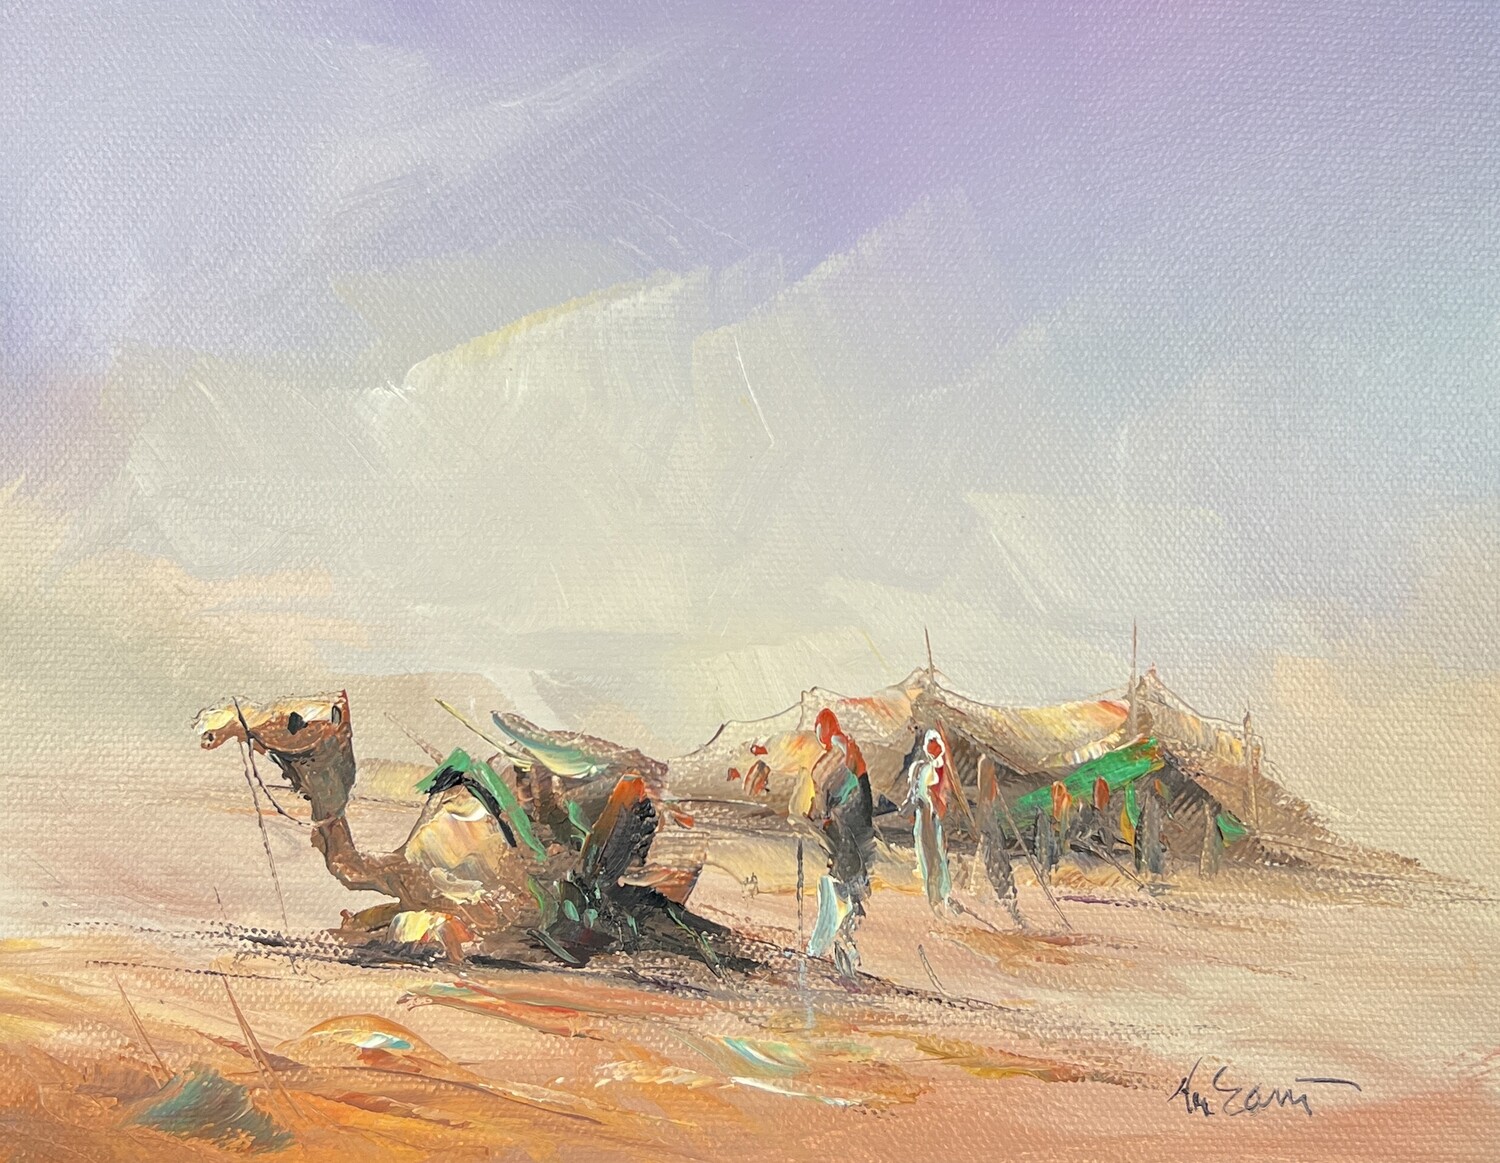 Bedouin Tent, Family & Camel - Knife Art Oil Painting